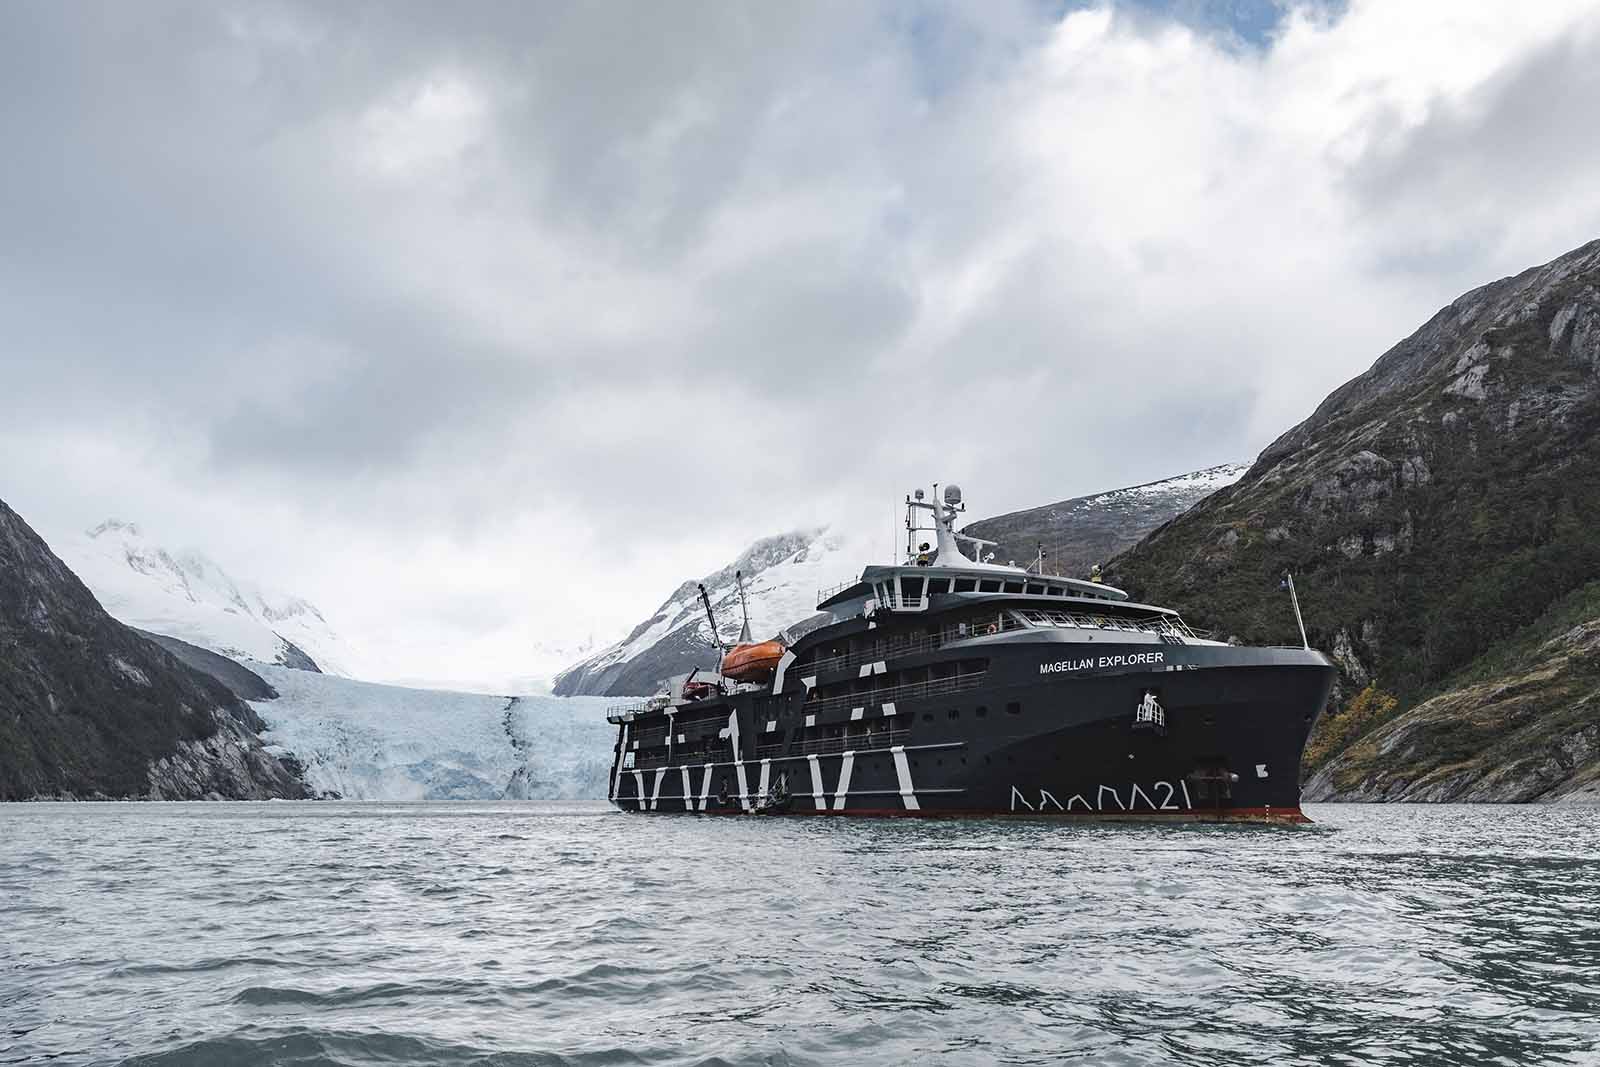 Antarctica Ship Inspection - The Magellan Explorer